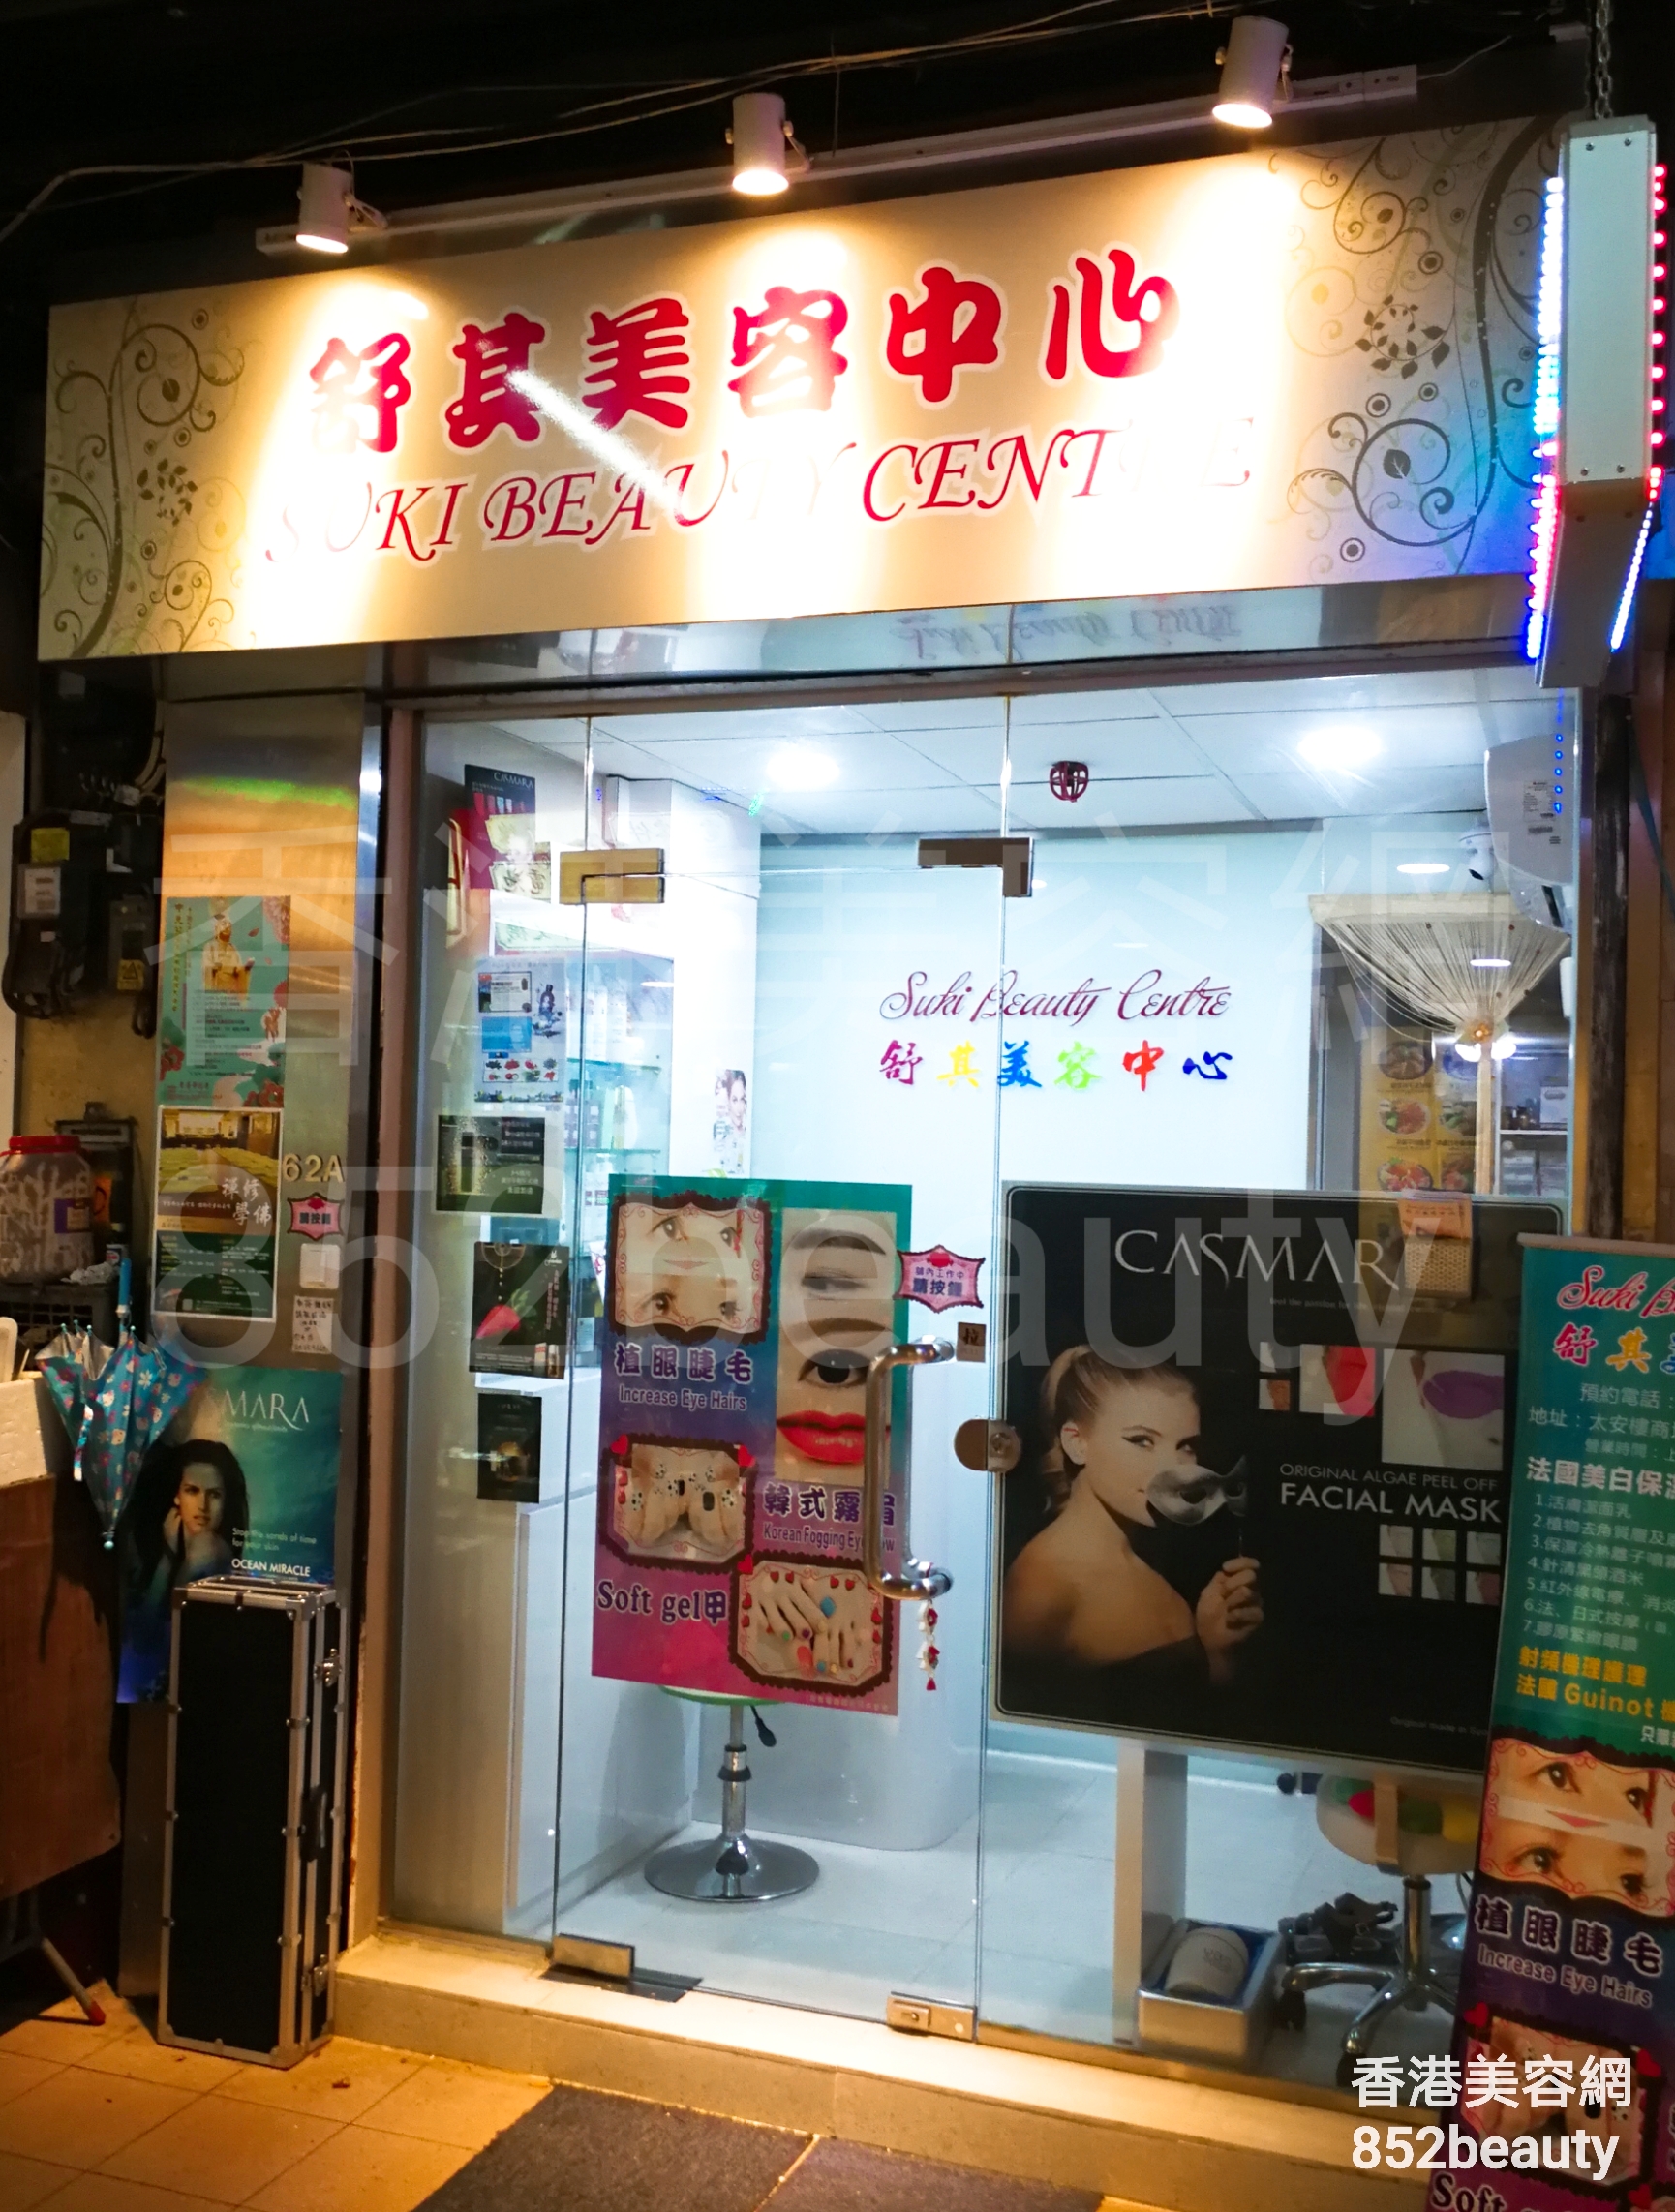 香港美容網 Hong Kong Beauty Salon 美容院 / 美容師: 舒其美容中心